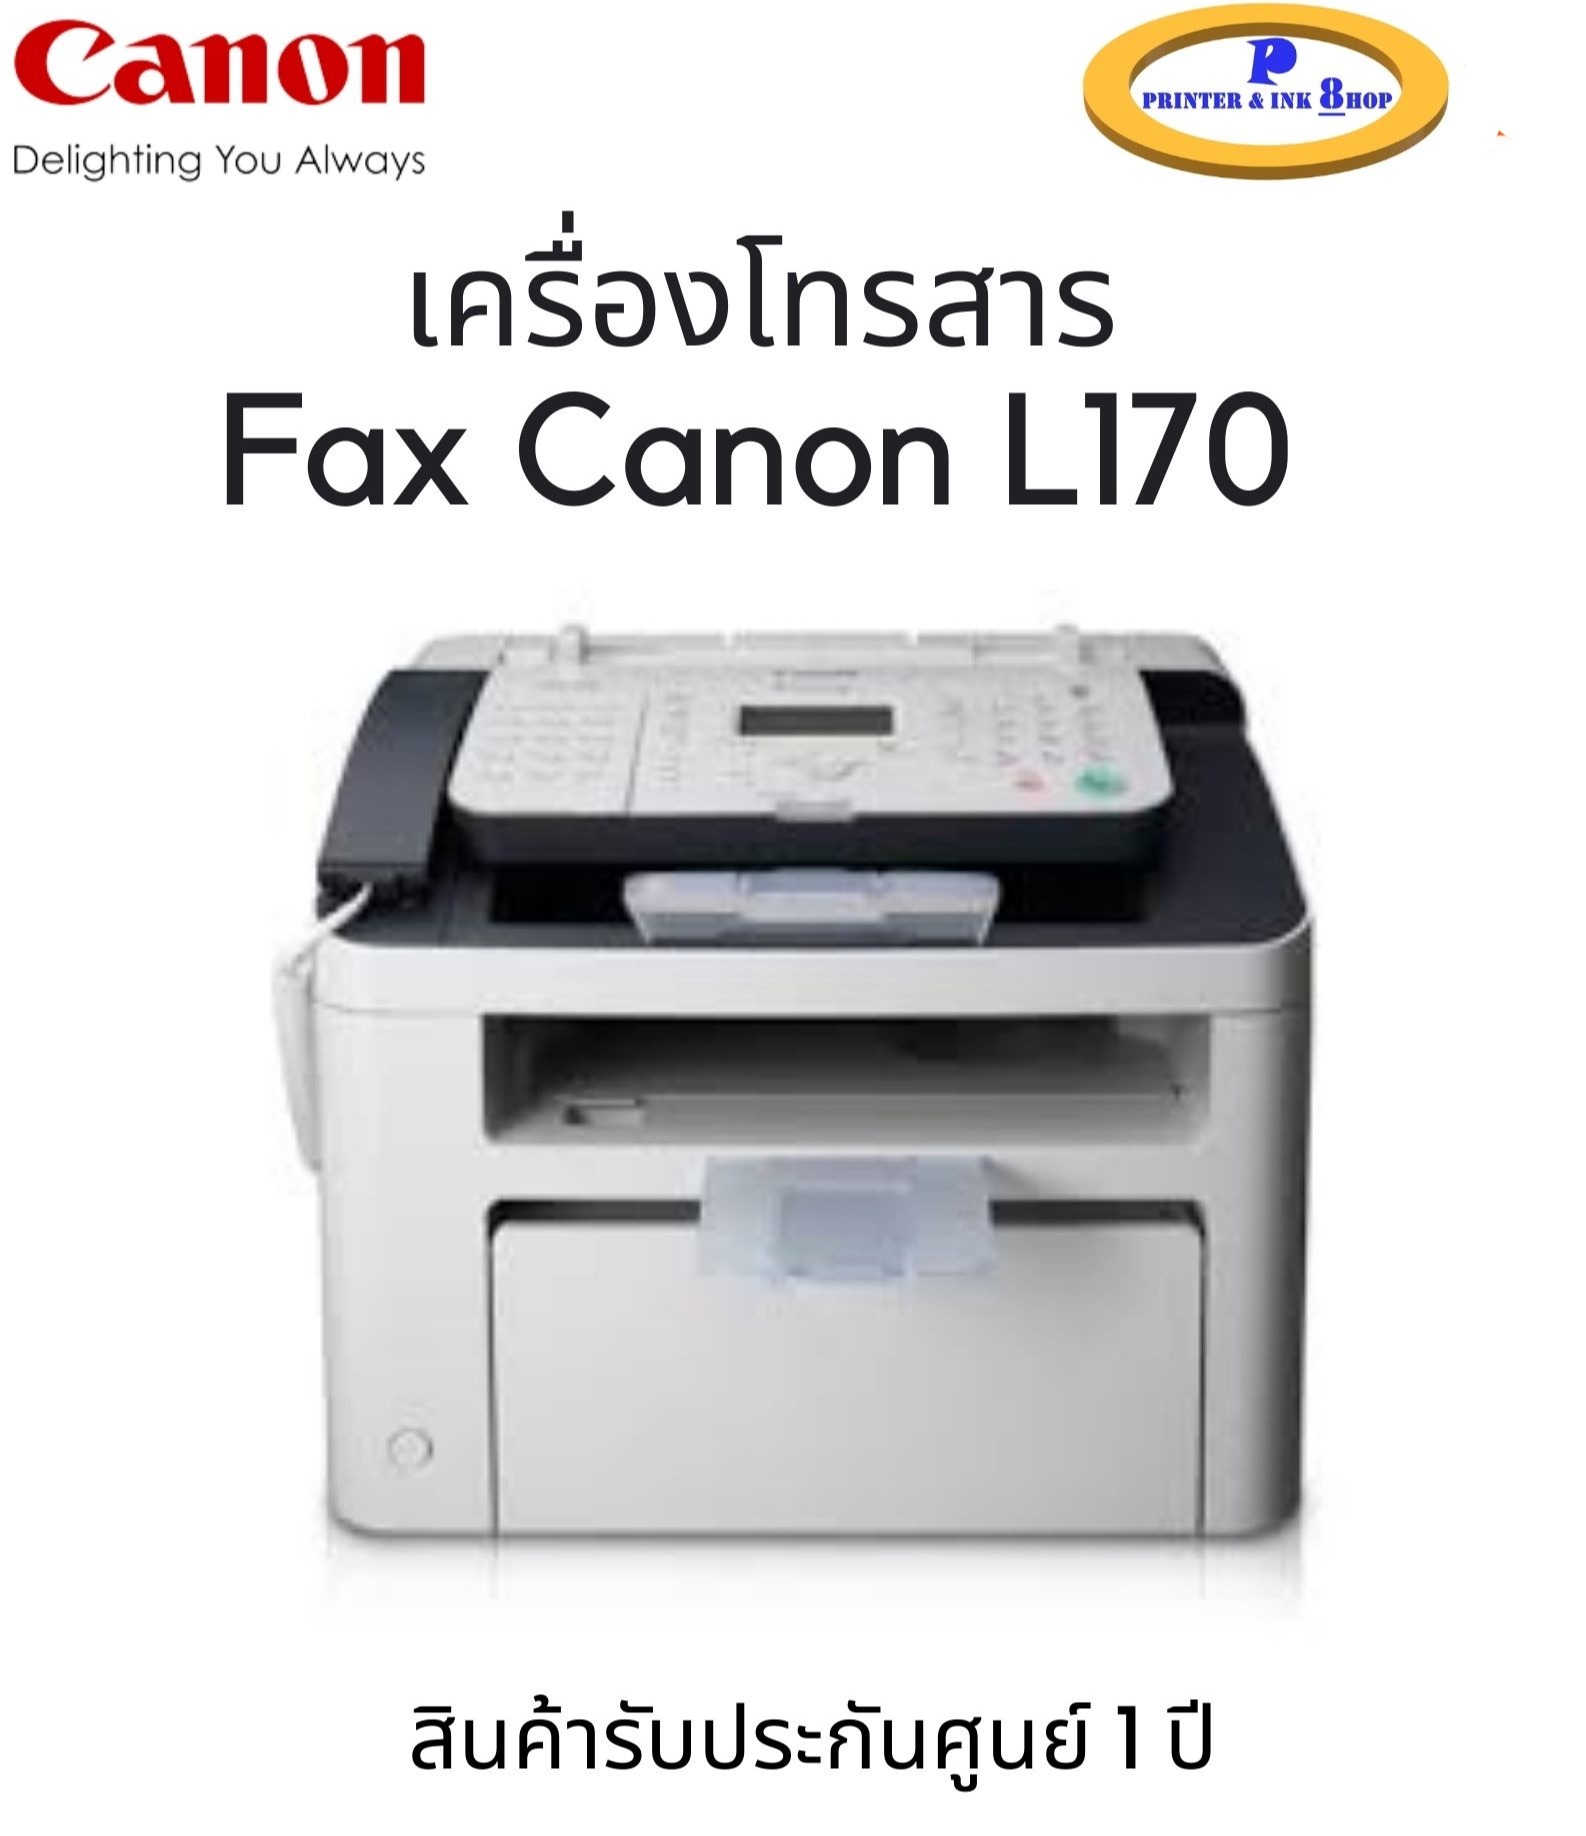 เครื่องโทรสารกระดาษธรรมดา Canon Fax L170 สิรค้ารับประกันศูนย์ 1 ปี